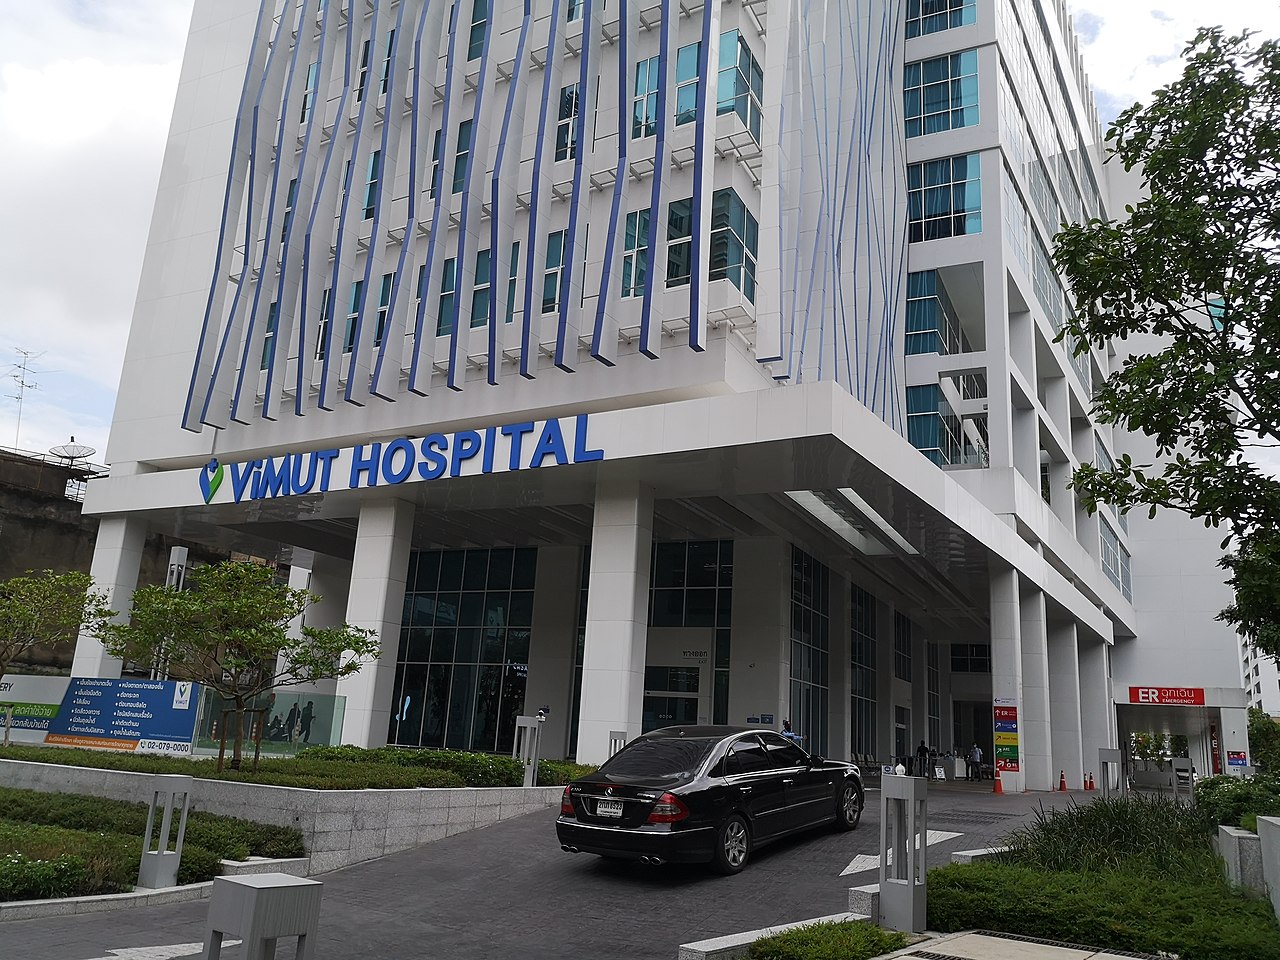 Vimut Hospital in Phaya Thai, Bangkok